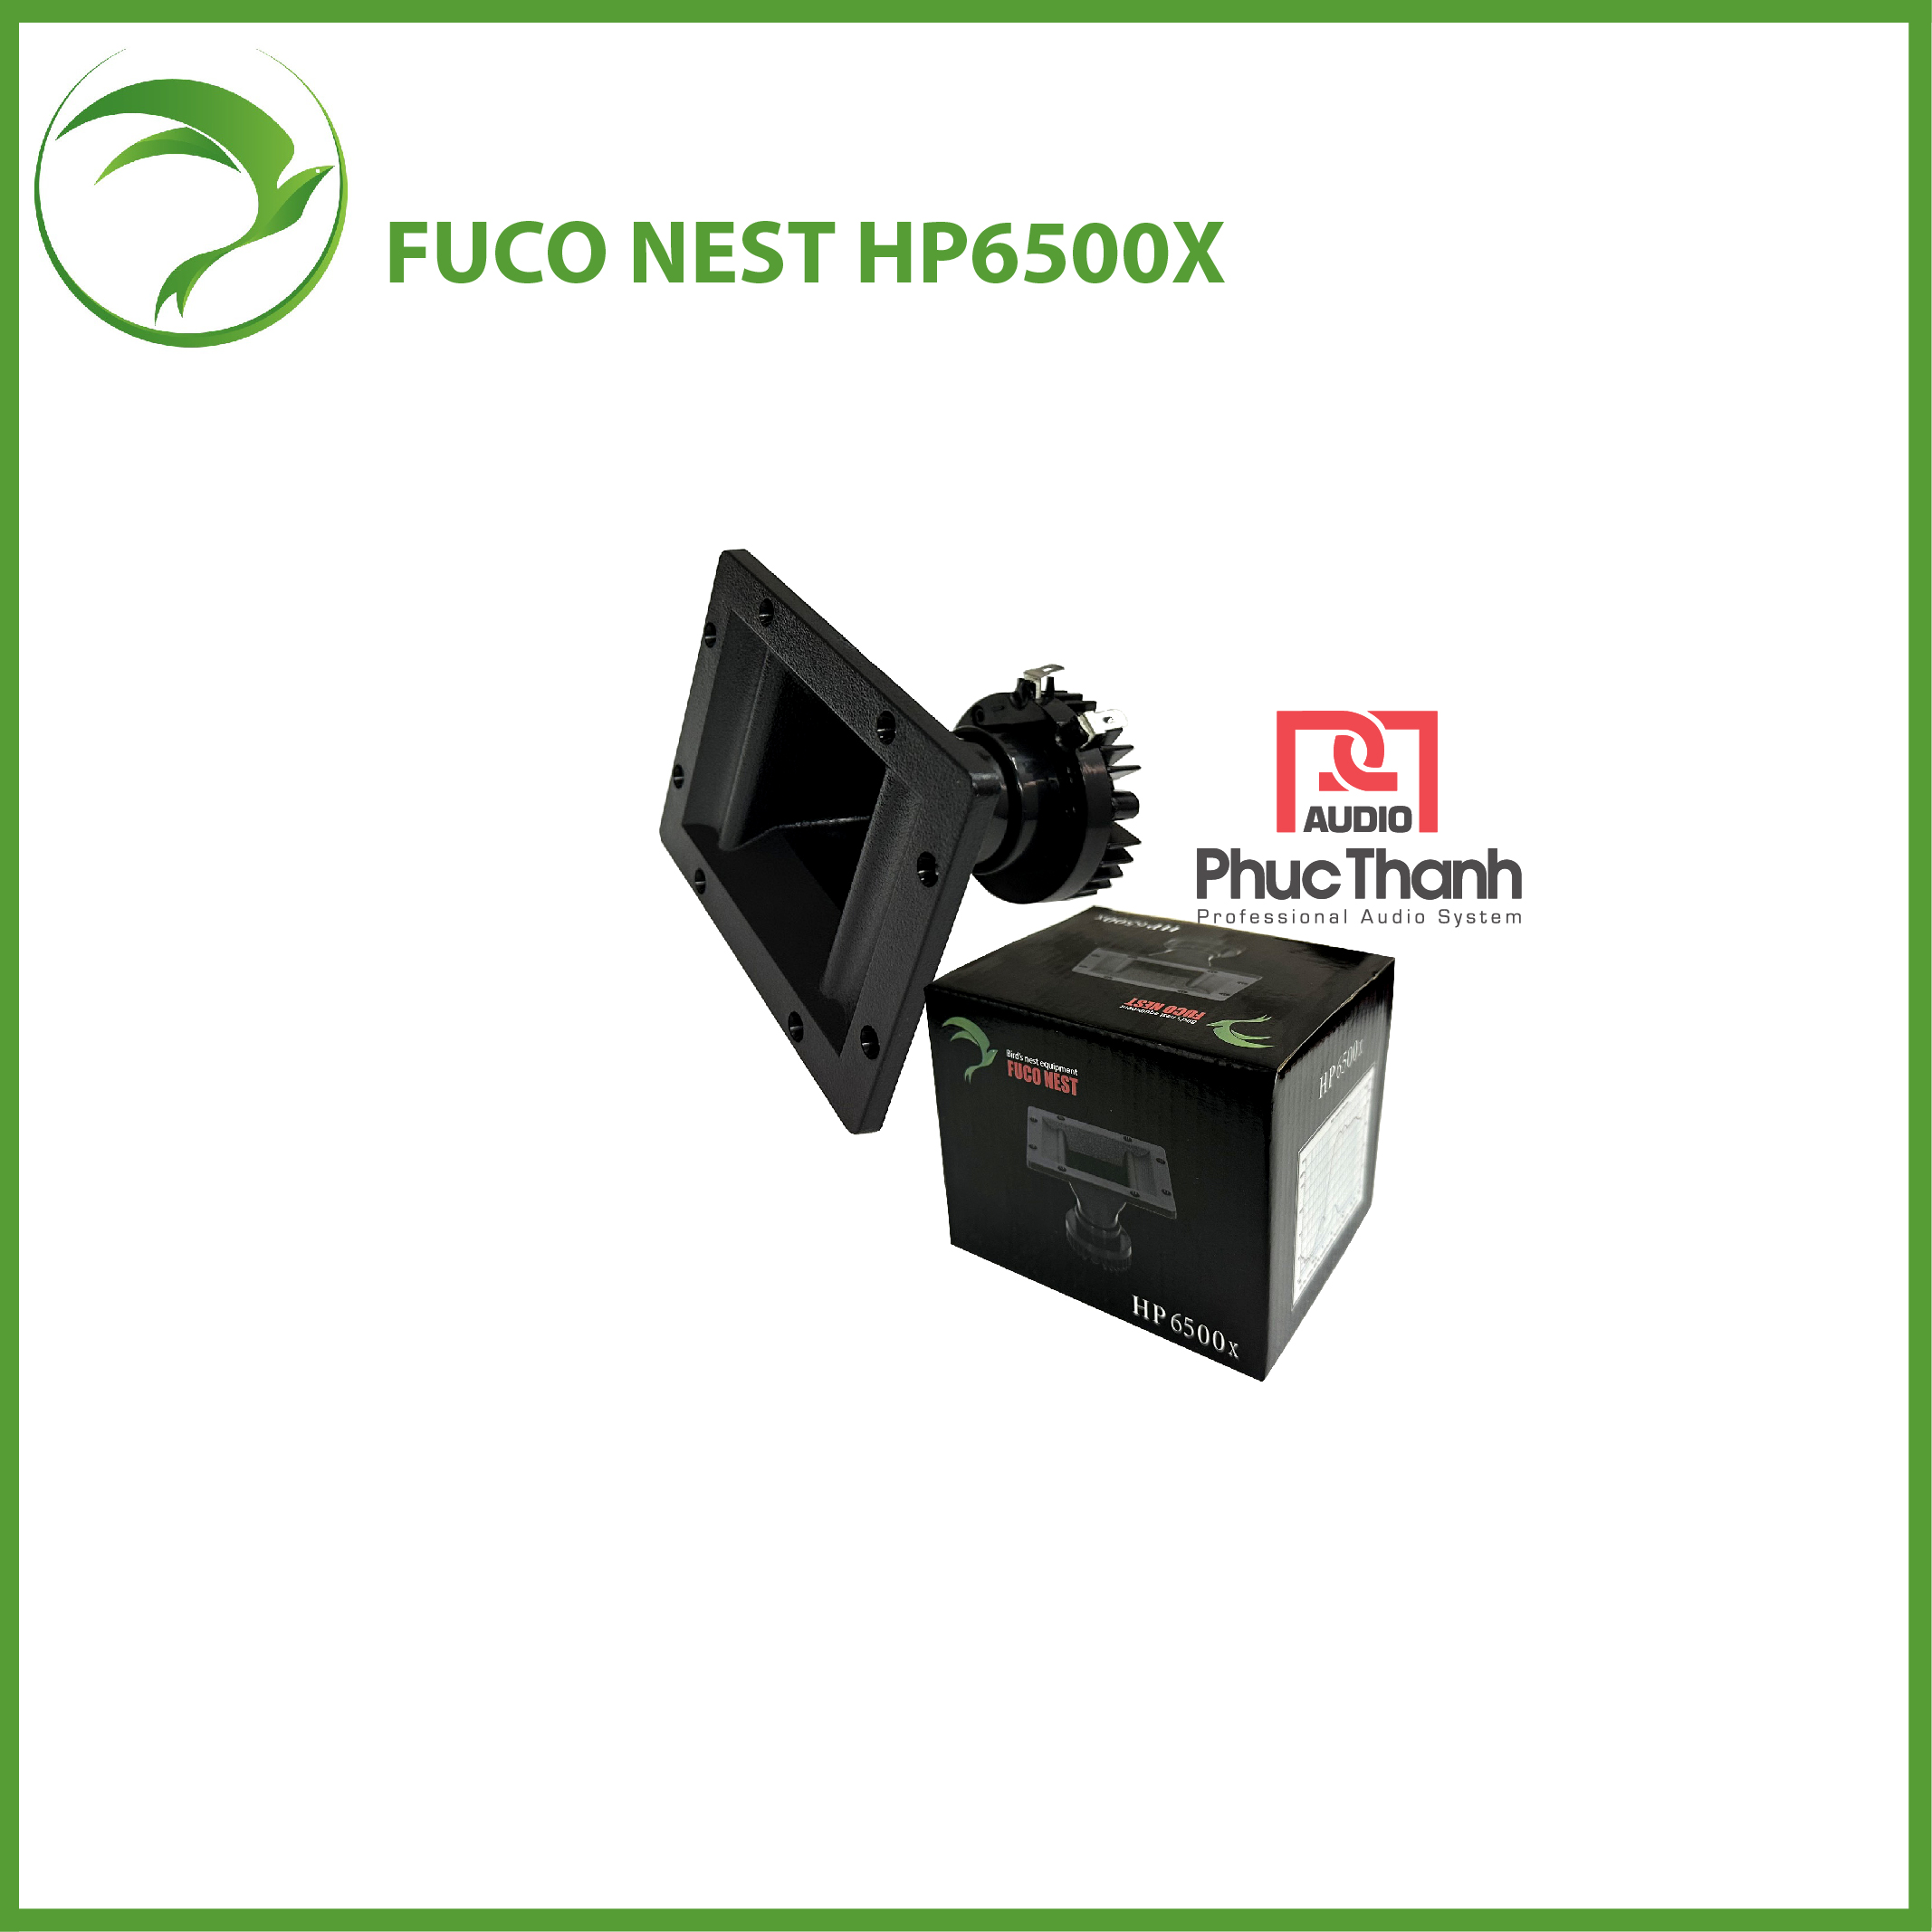 Loa Fuco Nest HP6500X (Đen)